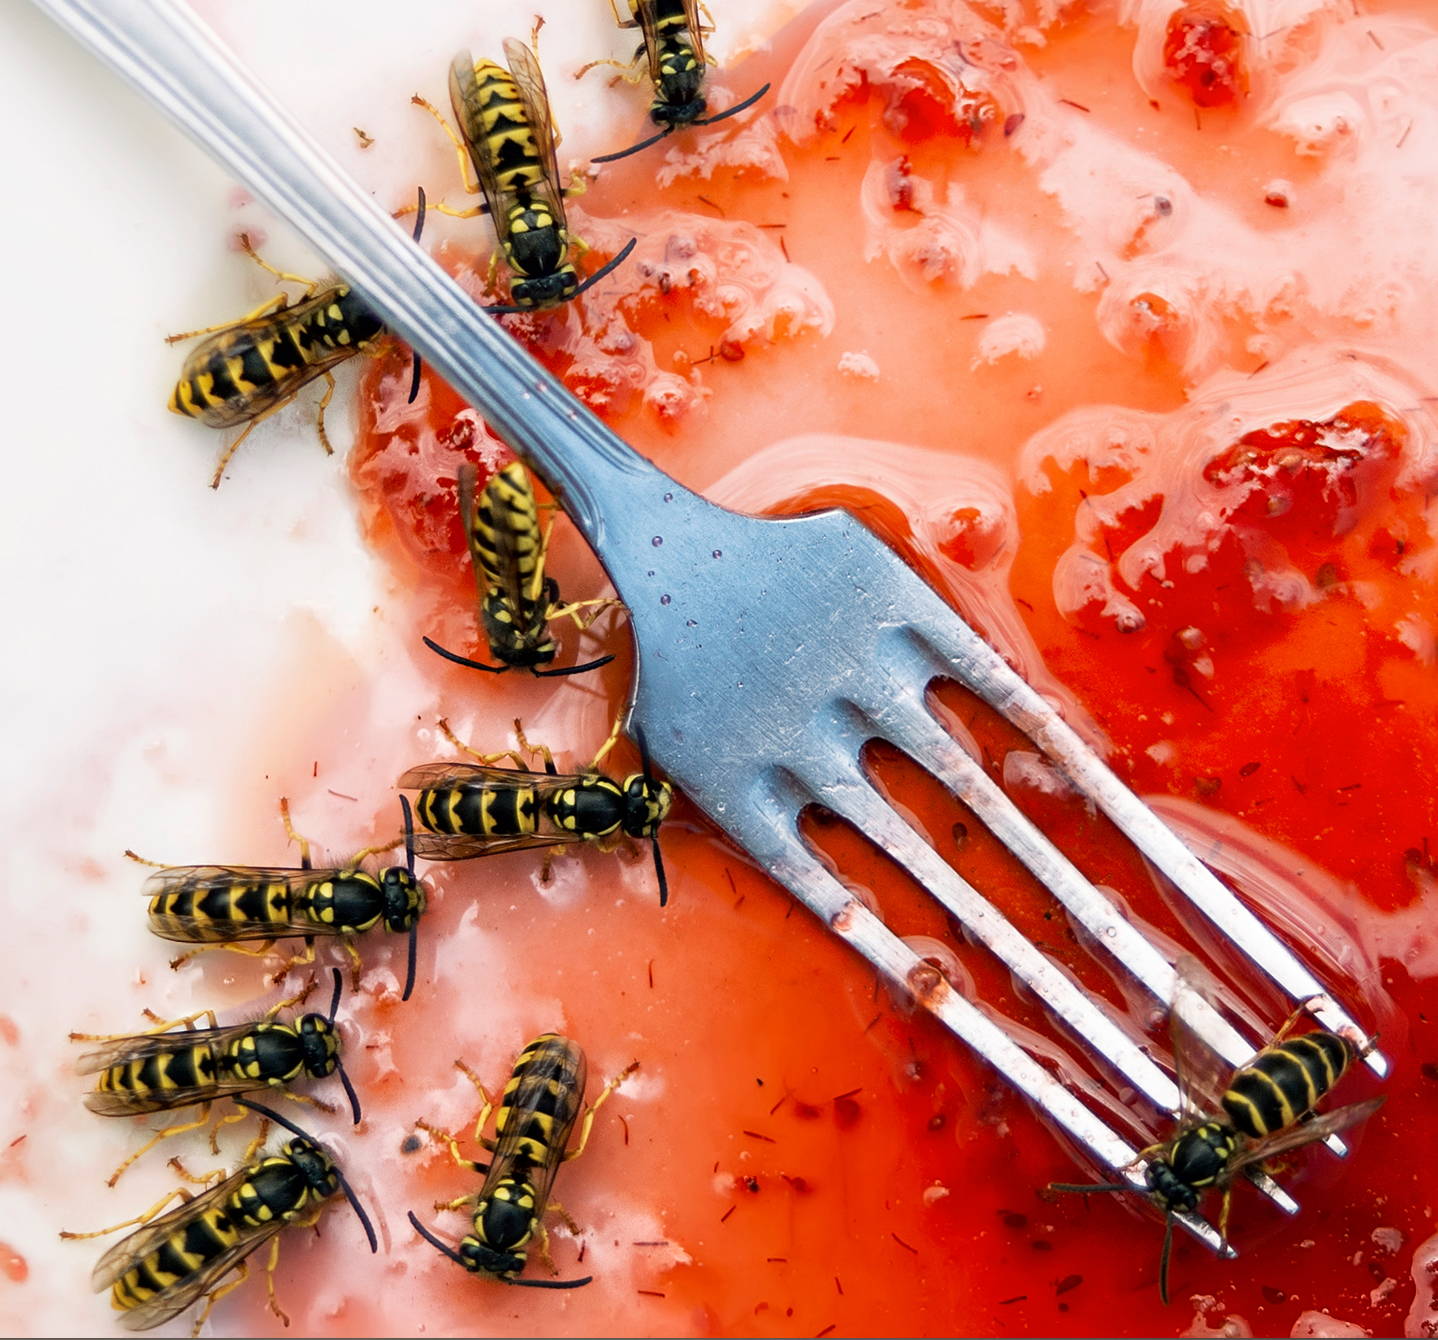 Co je alergie na vosí bodnutí? Vosy milují sladká jídla, například jahody, a při odhánění vás mohou bodnout, což u některých lidí vyvolá alergickou reakci